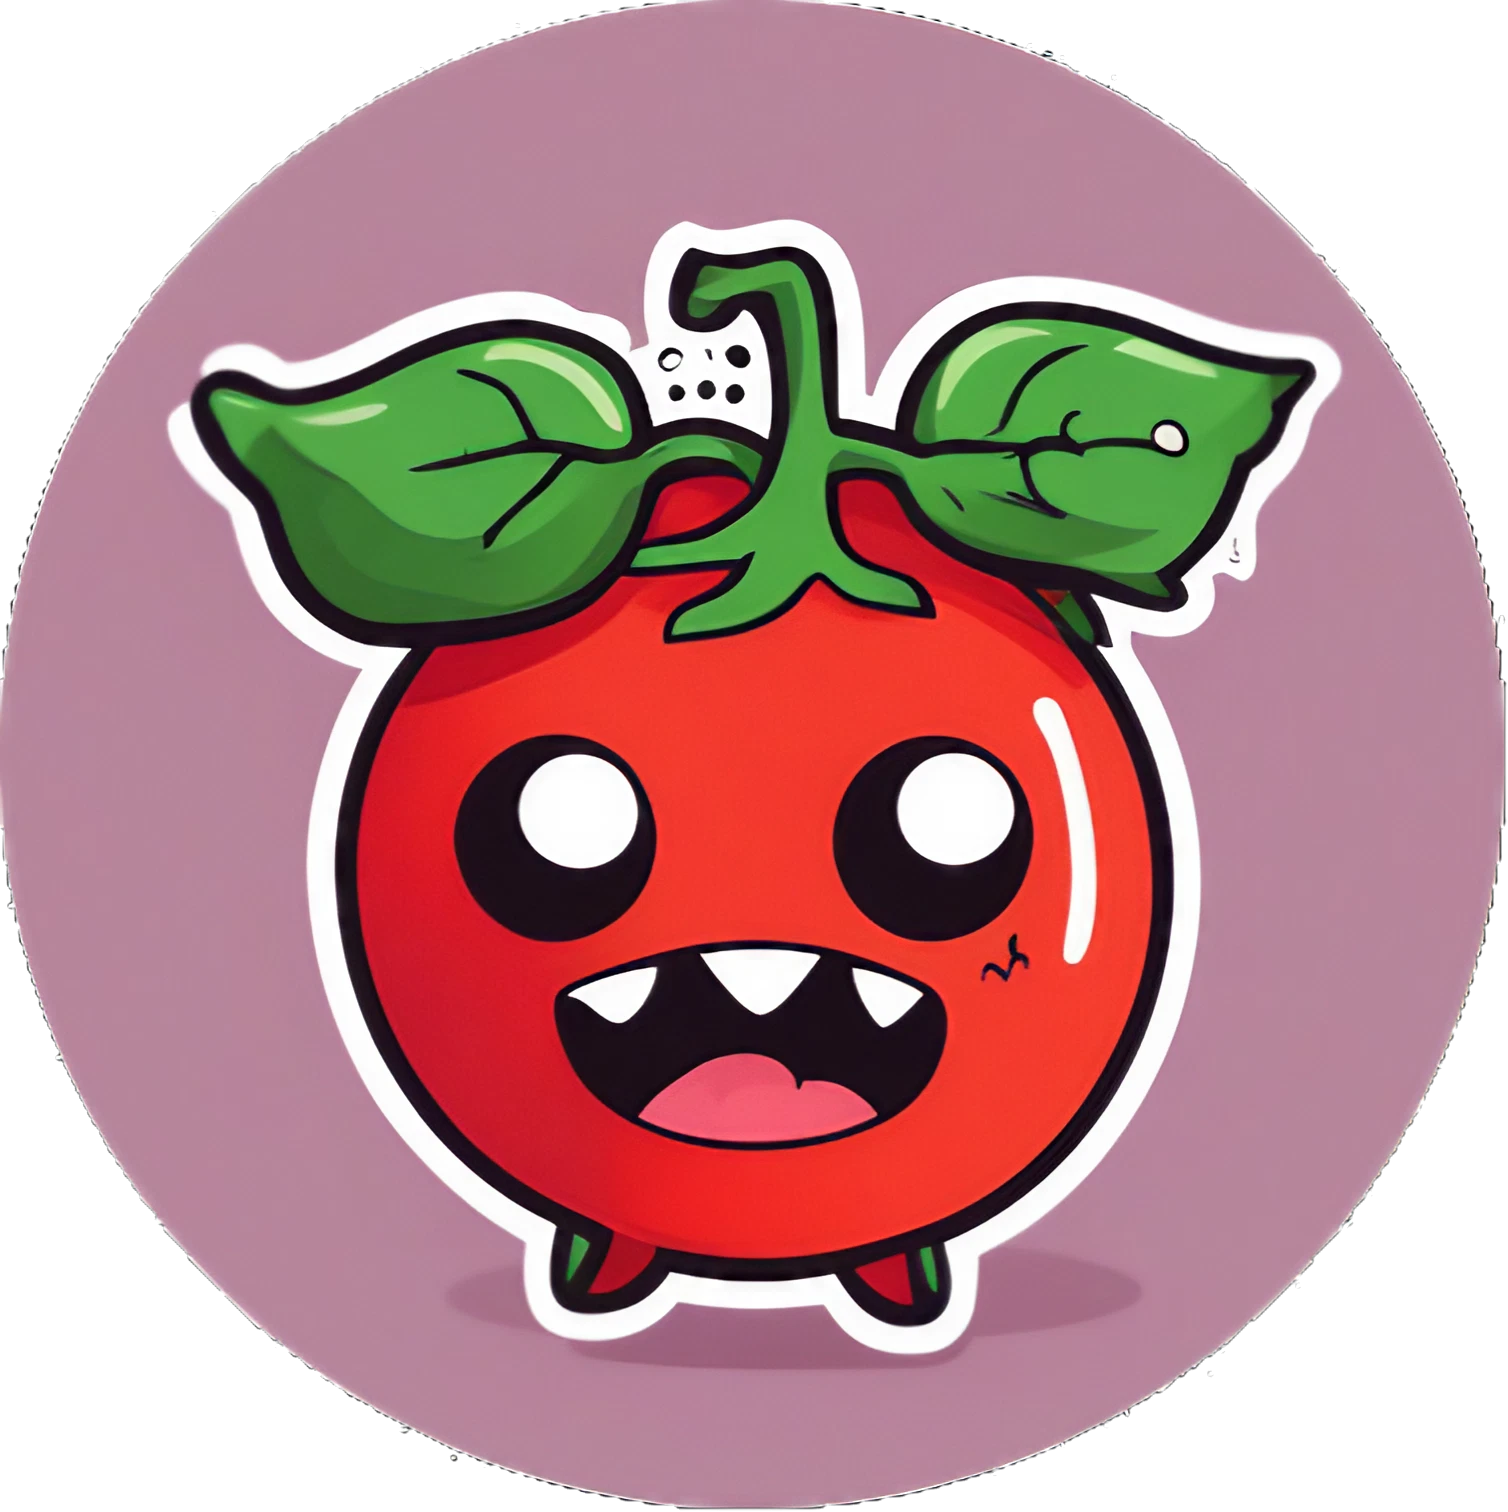 Kawaii Monster Tomate - Sticker - 3x3cm